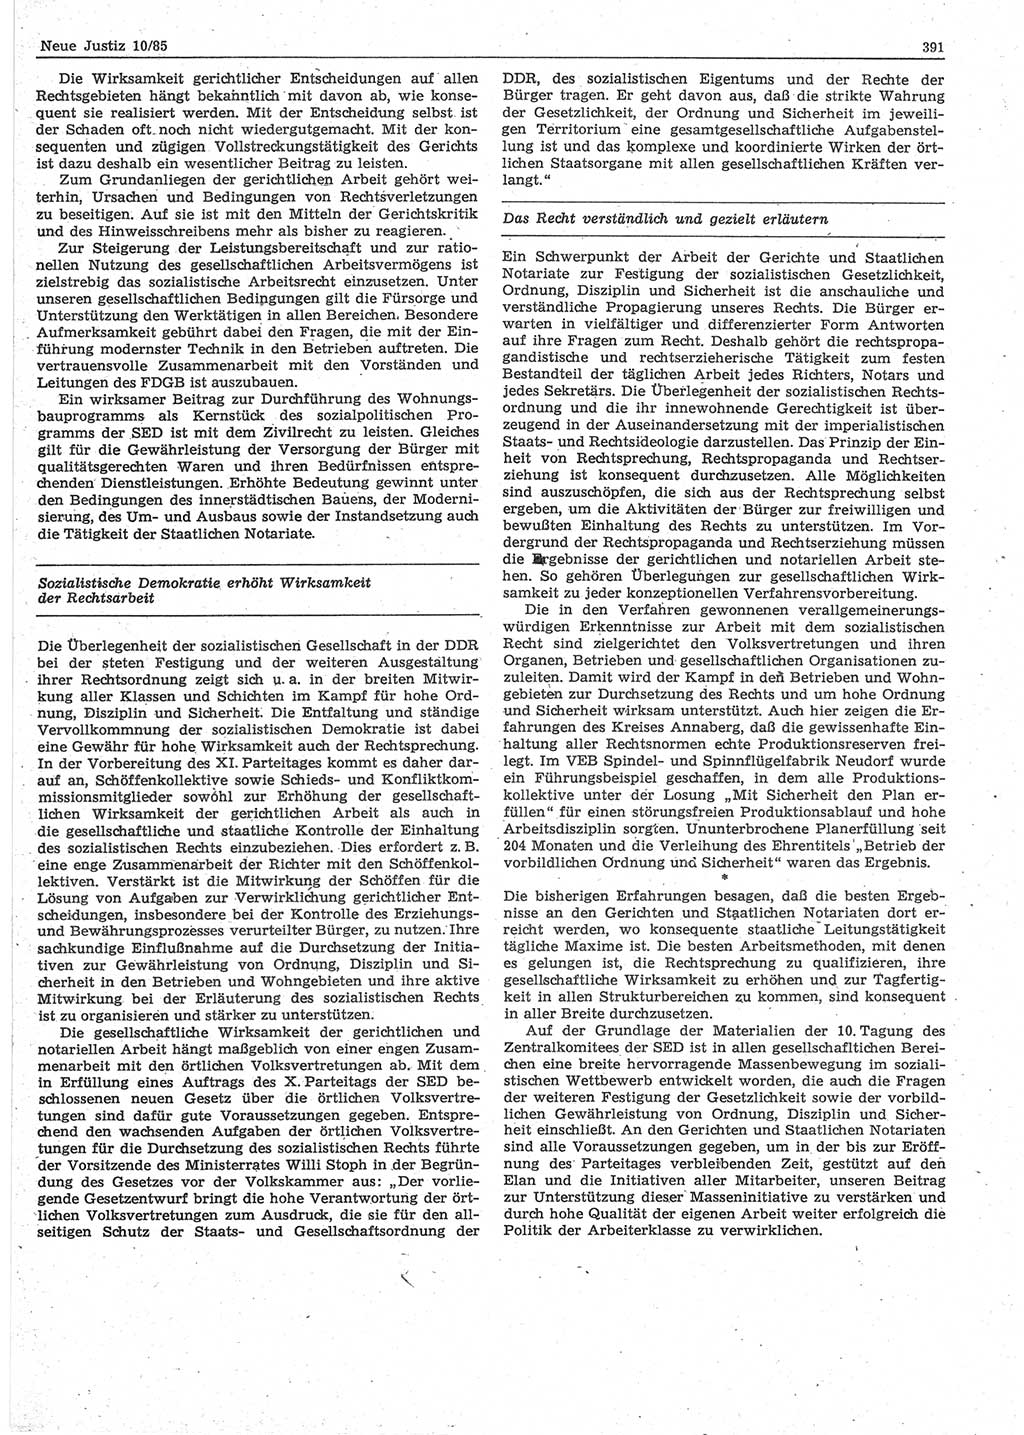 Neue Justiz (NJ), Zeitschrift für sozialistisches Recht und Gesetzlichkeit [Deutsche Demokratische Republik (DDR)], 39. Jahrgang 1985, Seite 391 (NJ DDR 1985, S. 391)